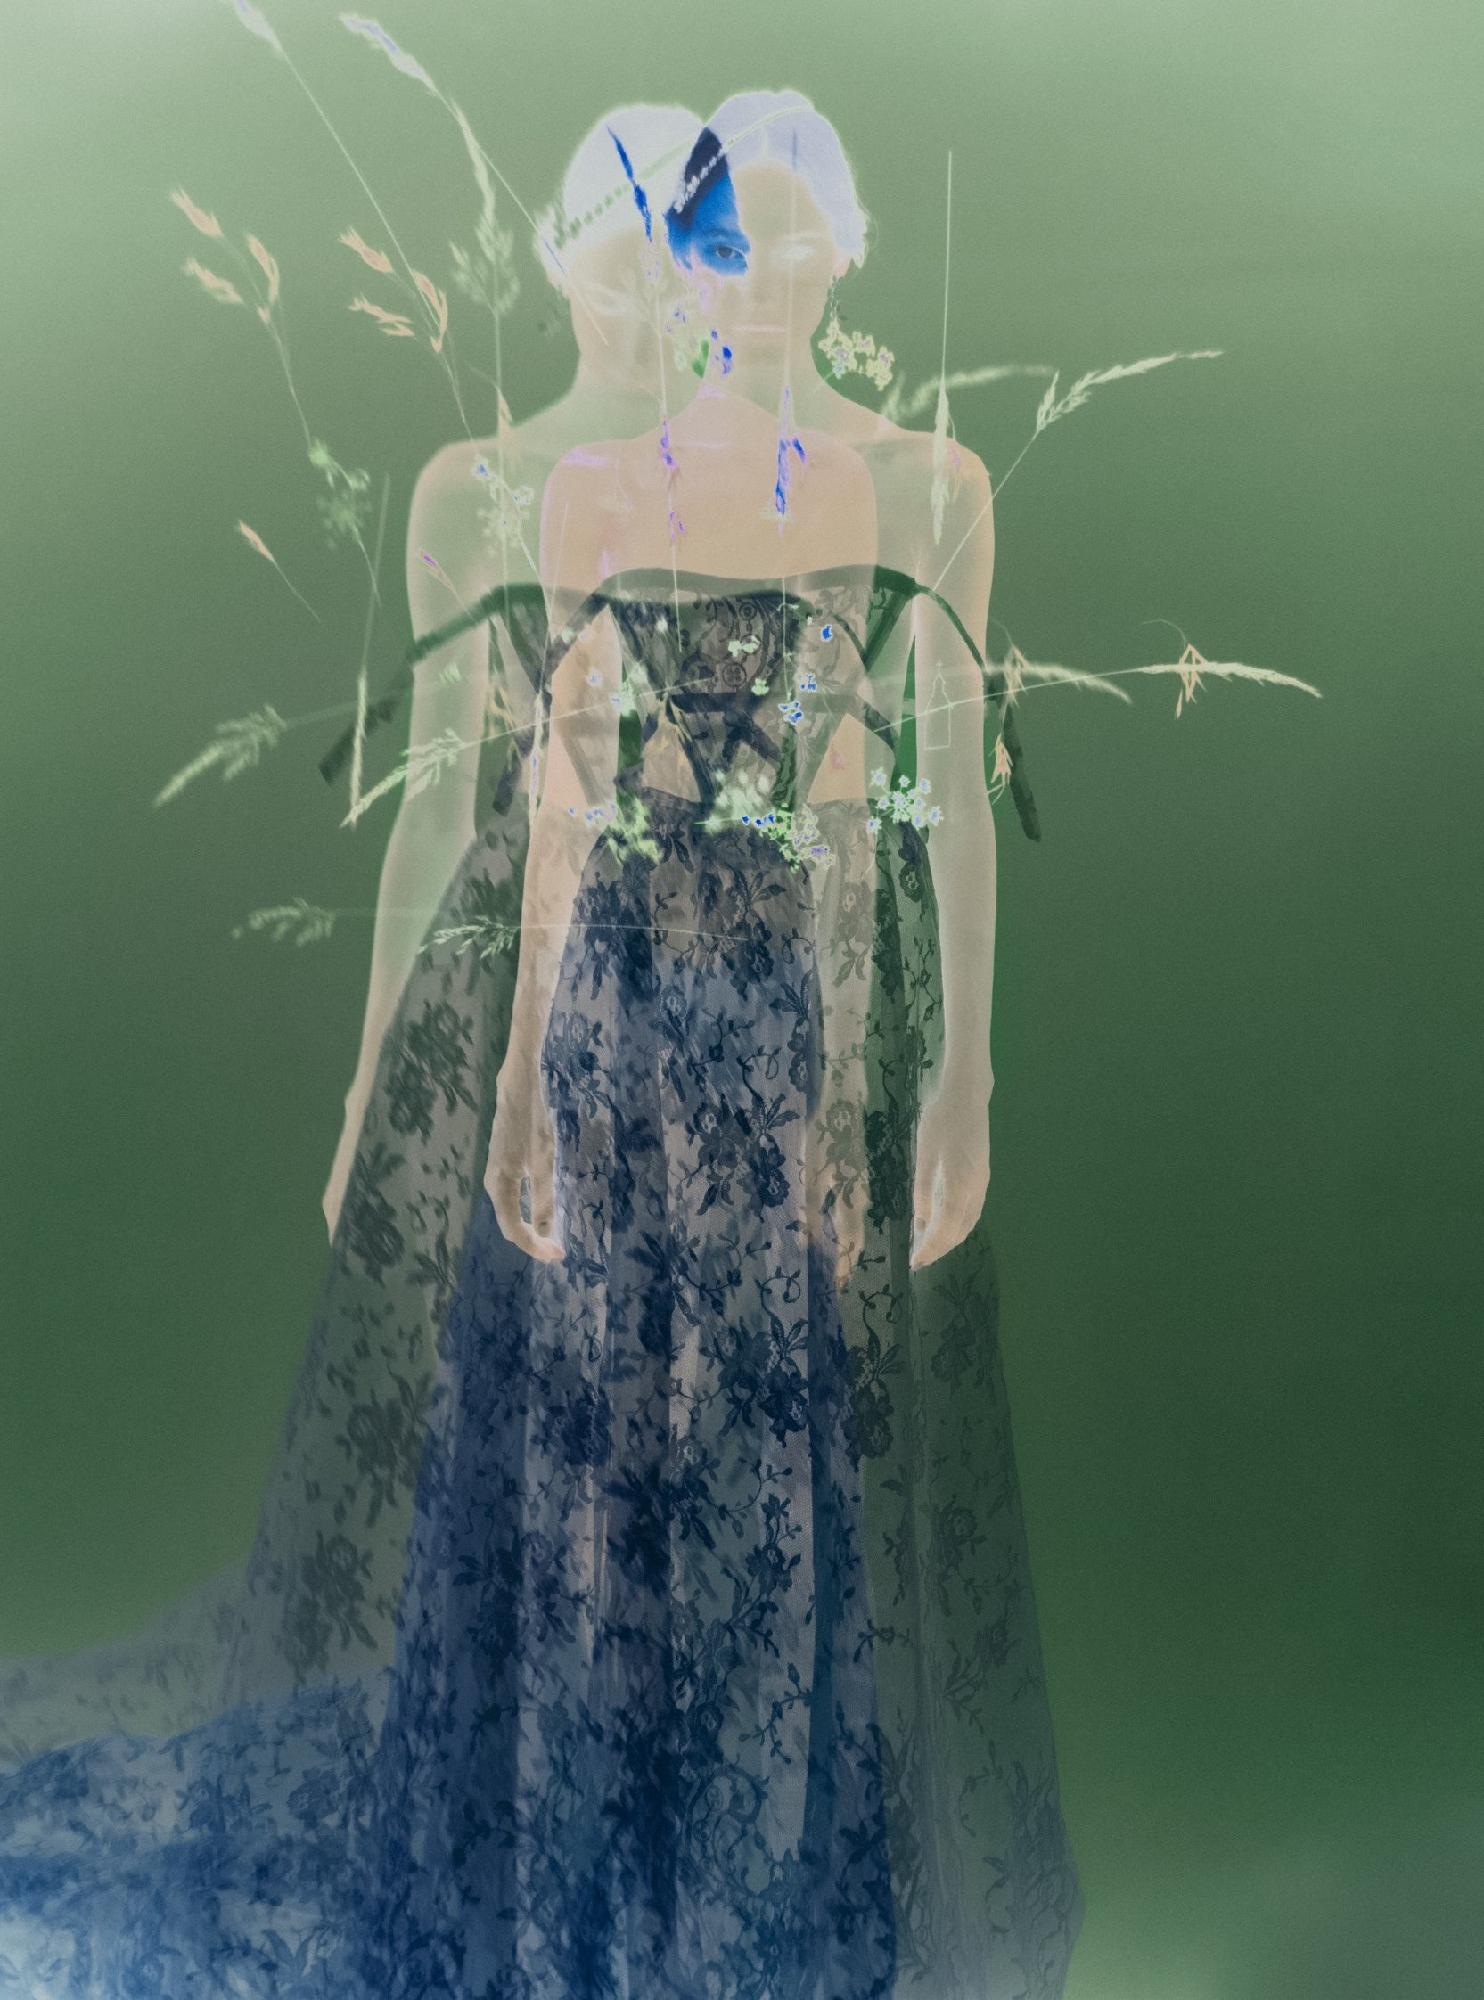 Not titled yet, 2022 – Erik Madigan Heck, Fashion, Dress, Human, Flowers, Art